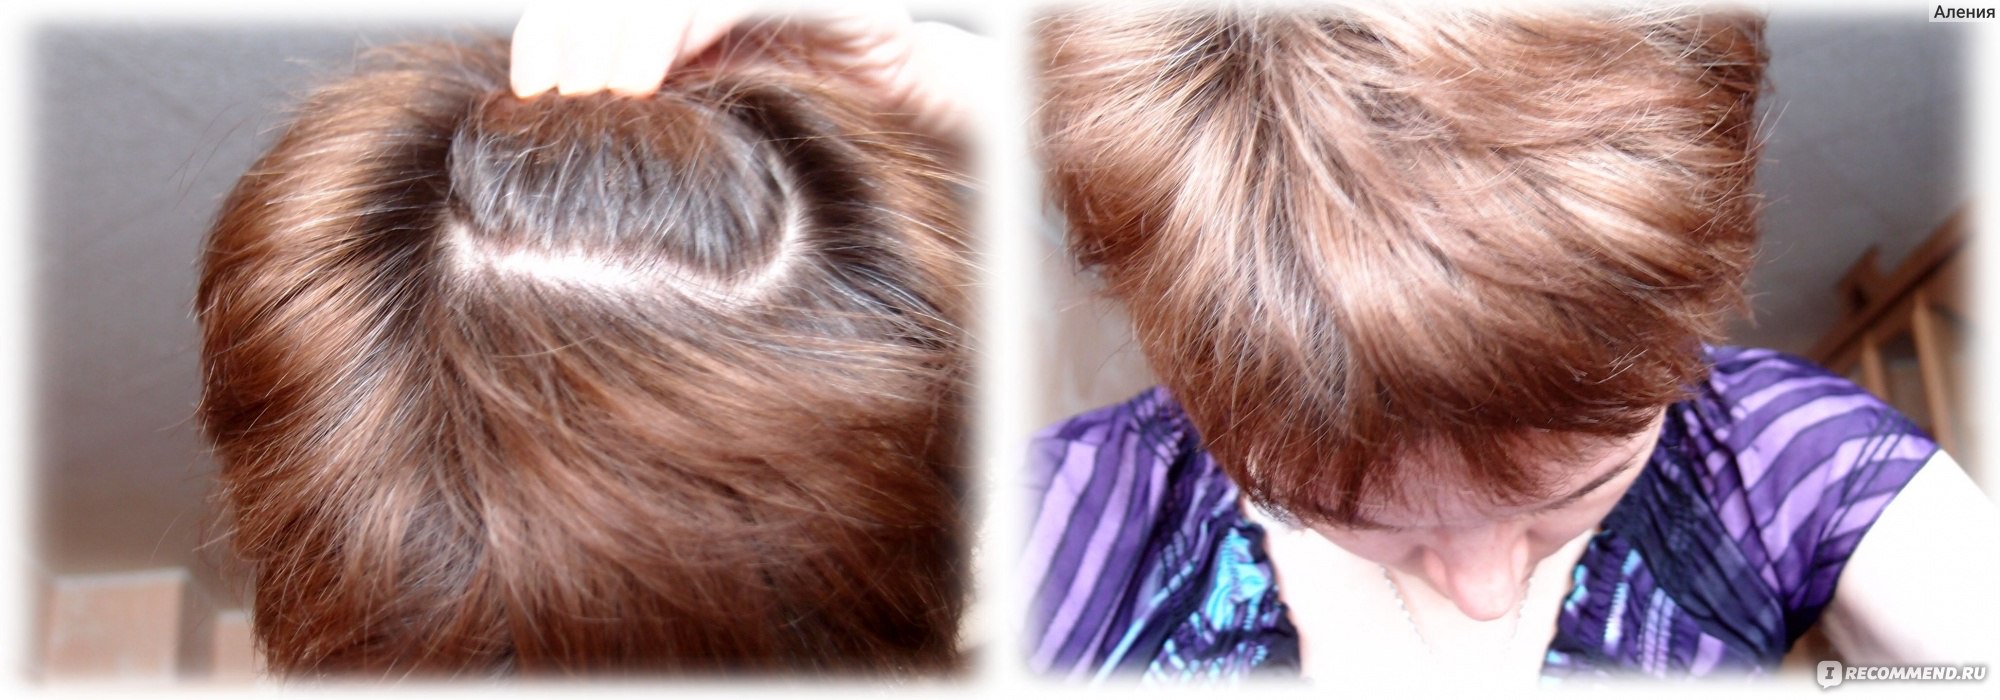 Оттенки для седых волос фото до и после